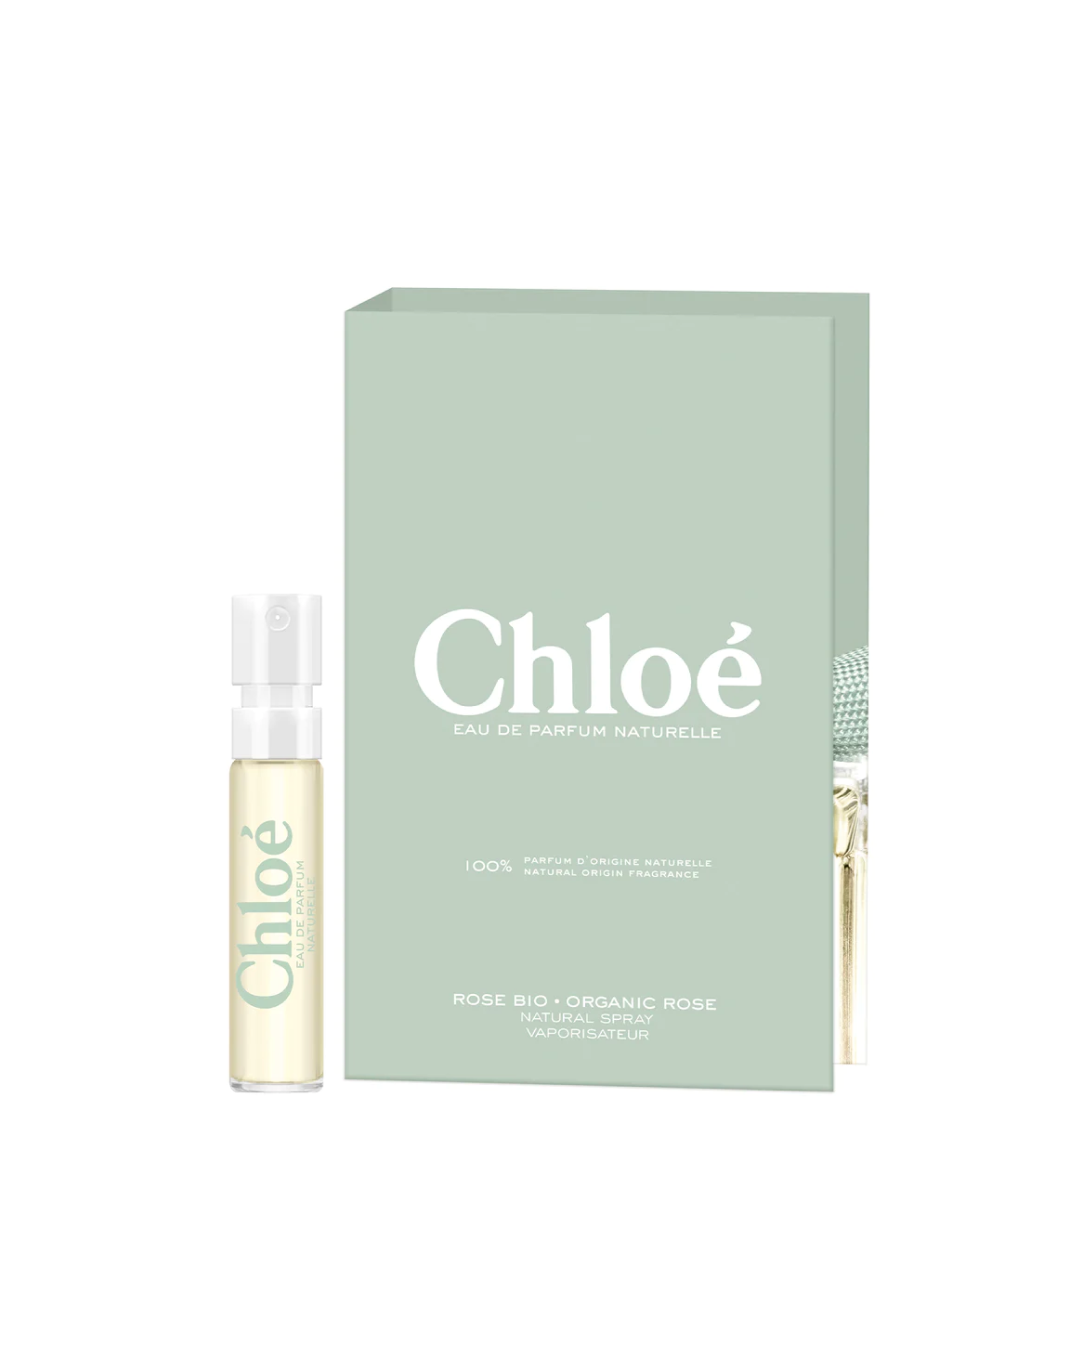 Chloe Chloe EDP Naturelle Travel Vial (1.2ml) - Best Buy World Philippines